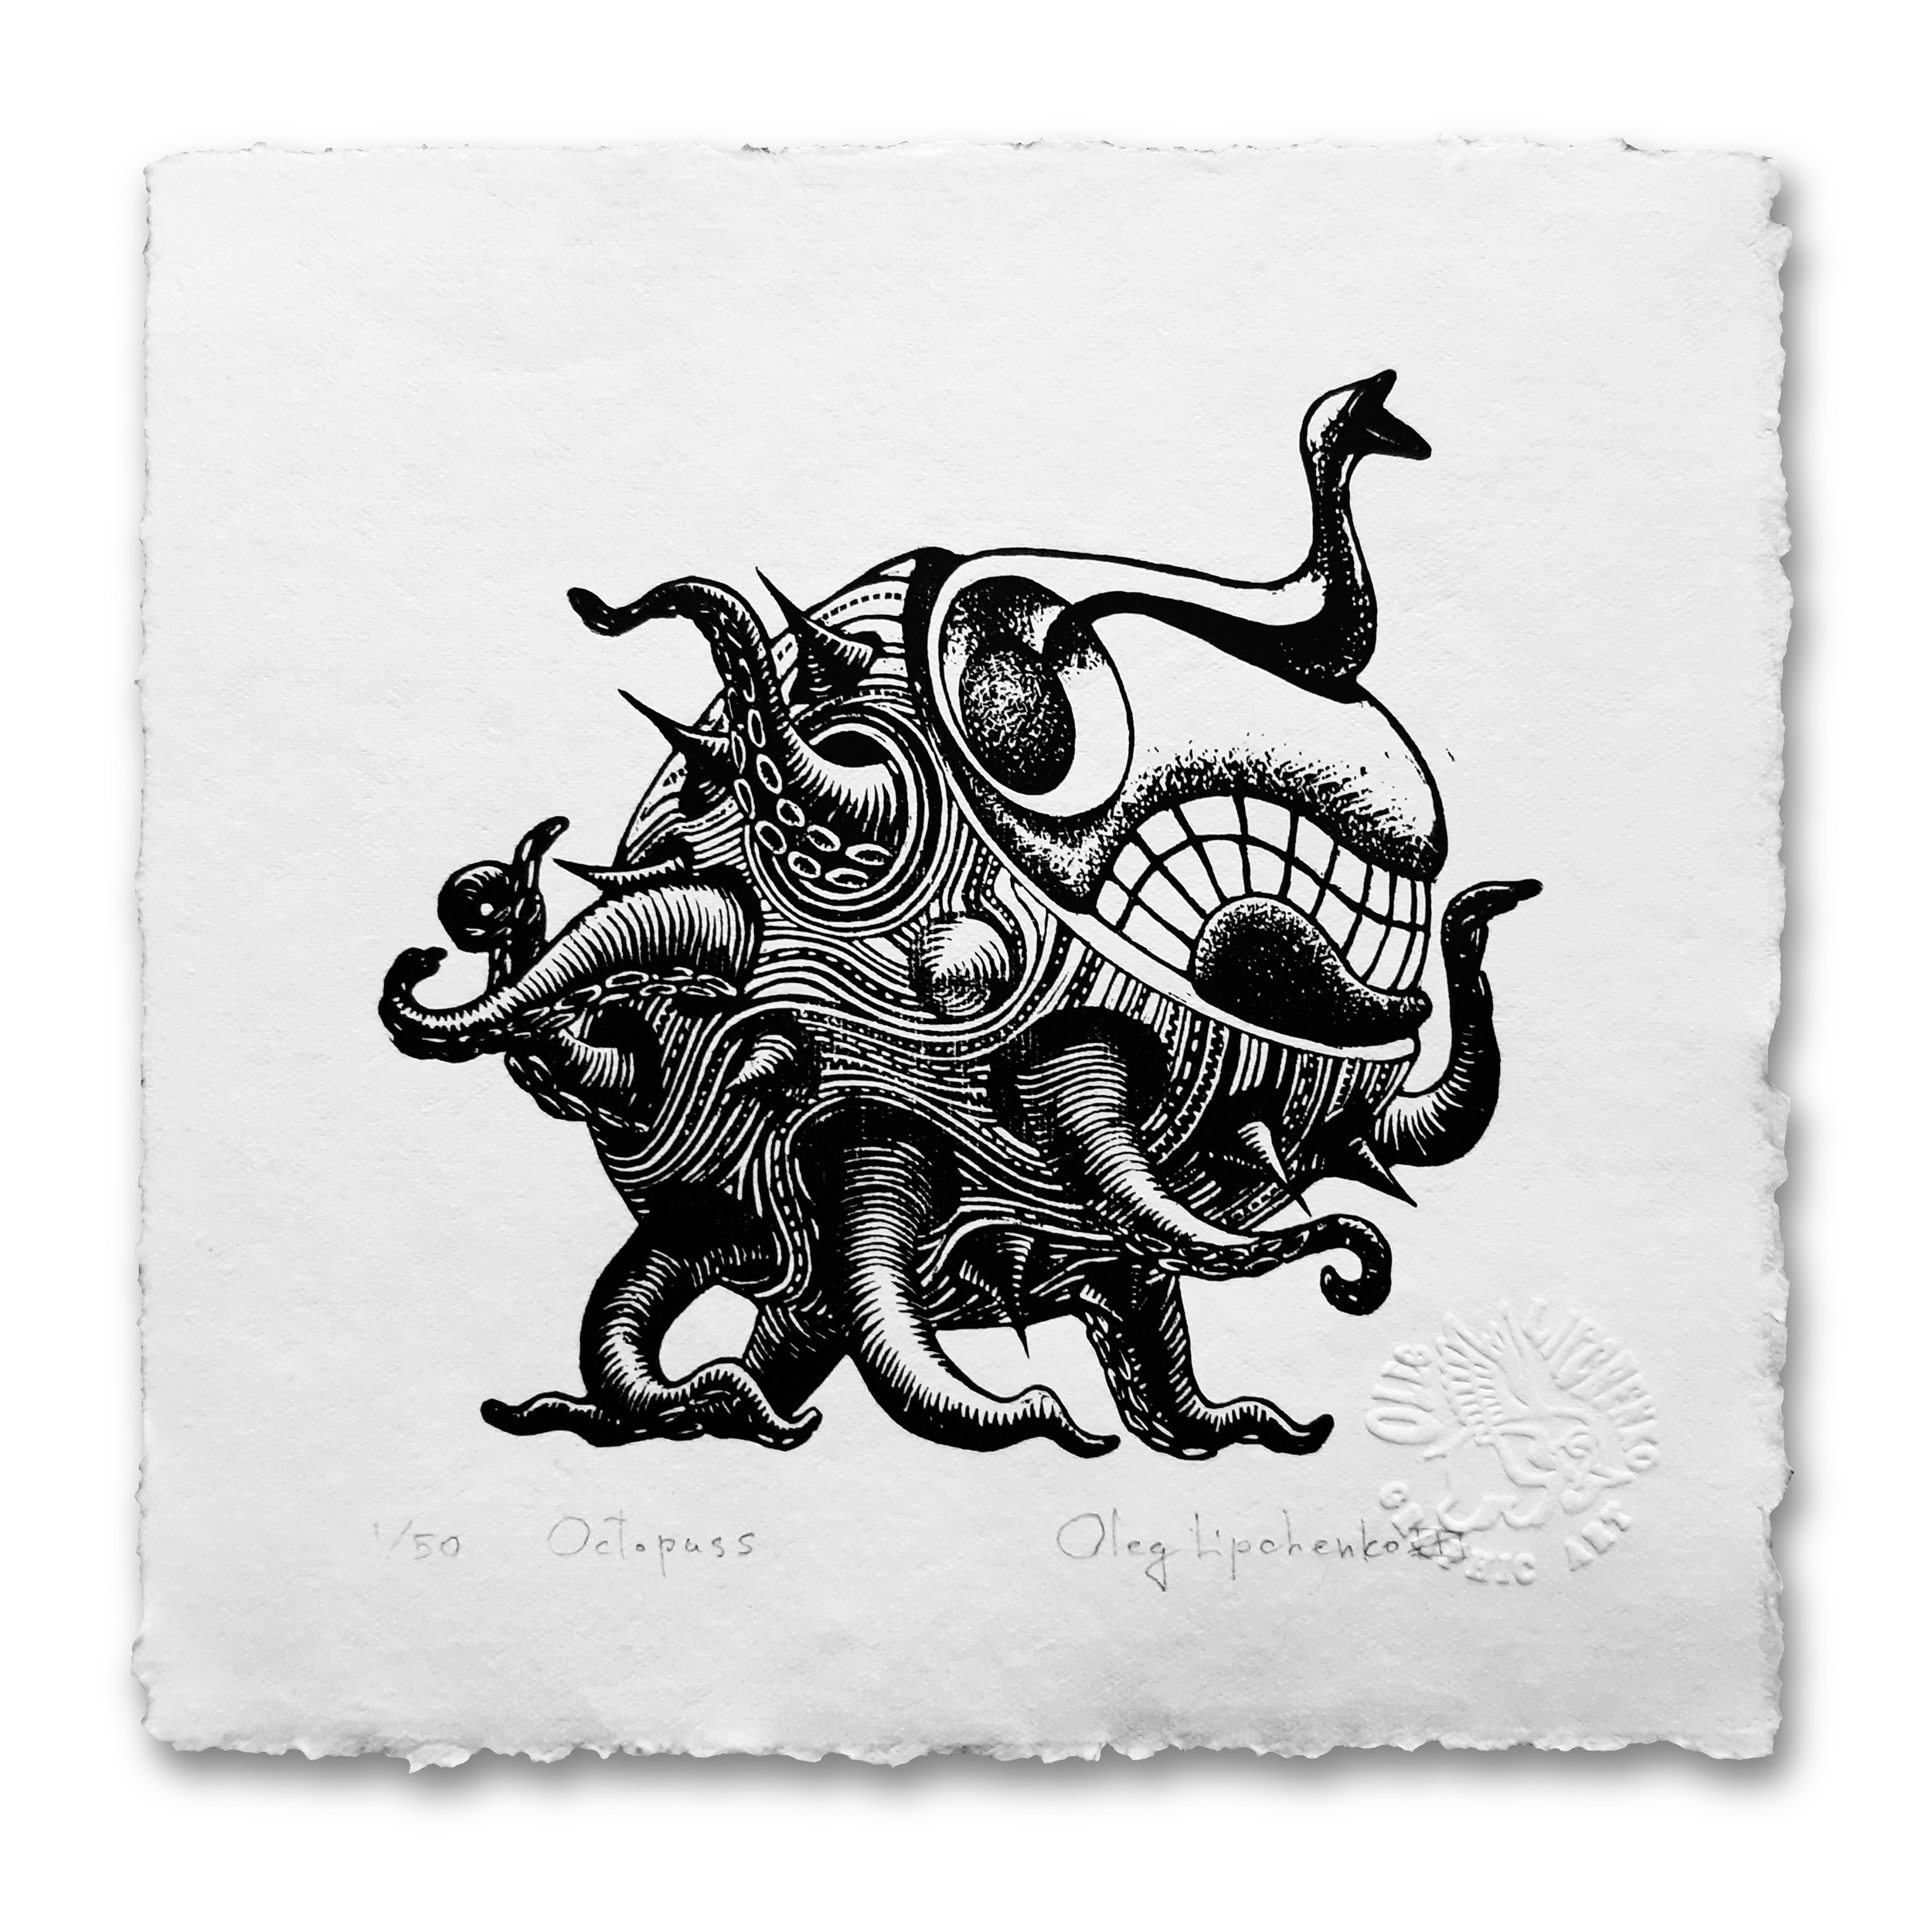 Octopuss-linocut